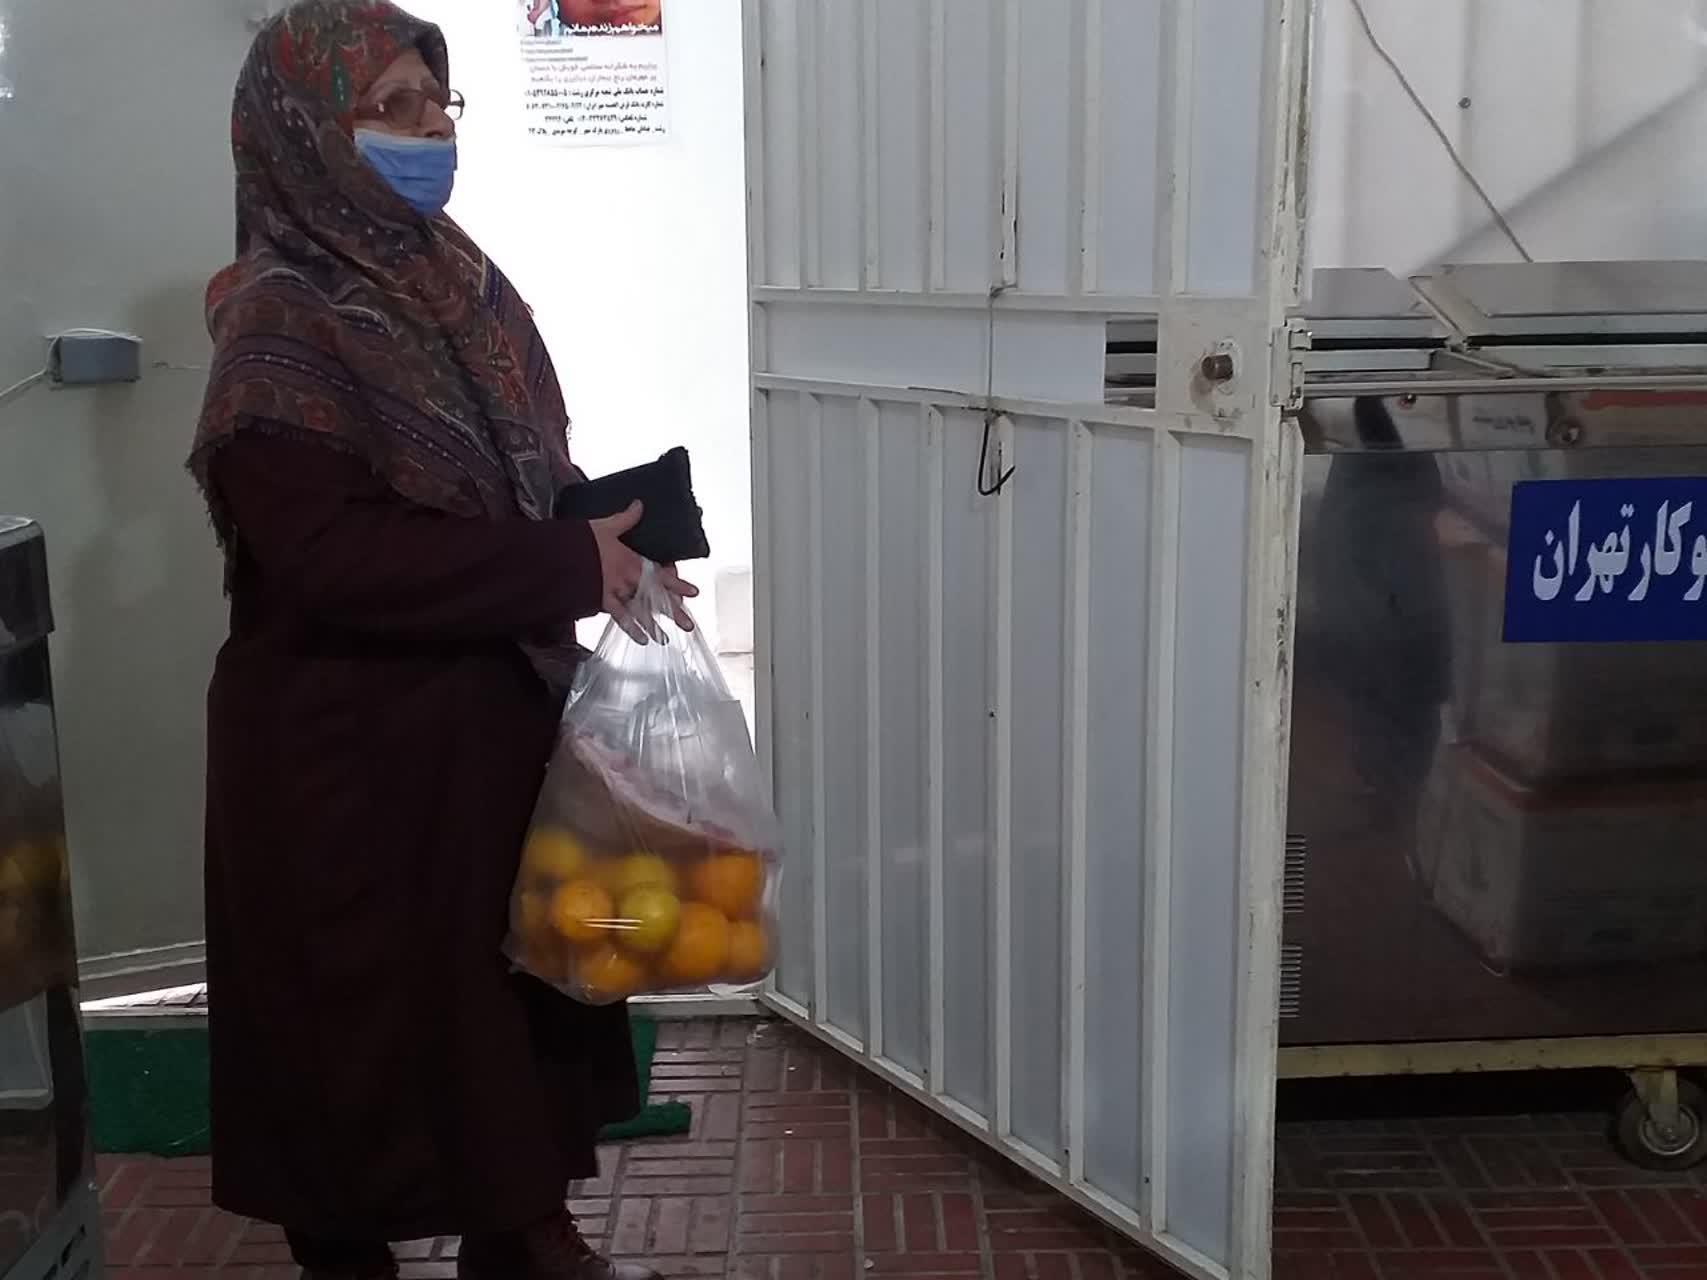 اهدای صدها سبد یلدا به مهرجویان تحت پوشش | صد دانه امید به ایستگاه آخر رسید